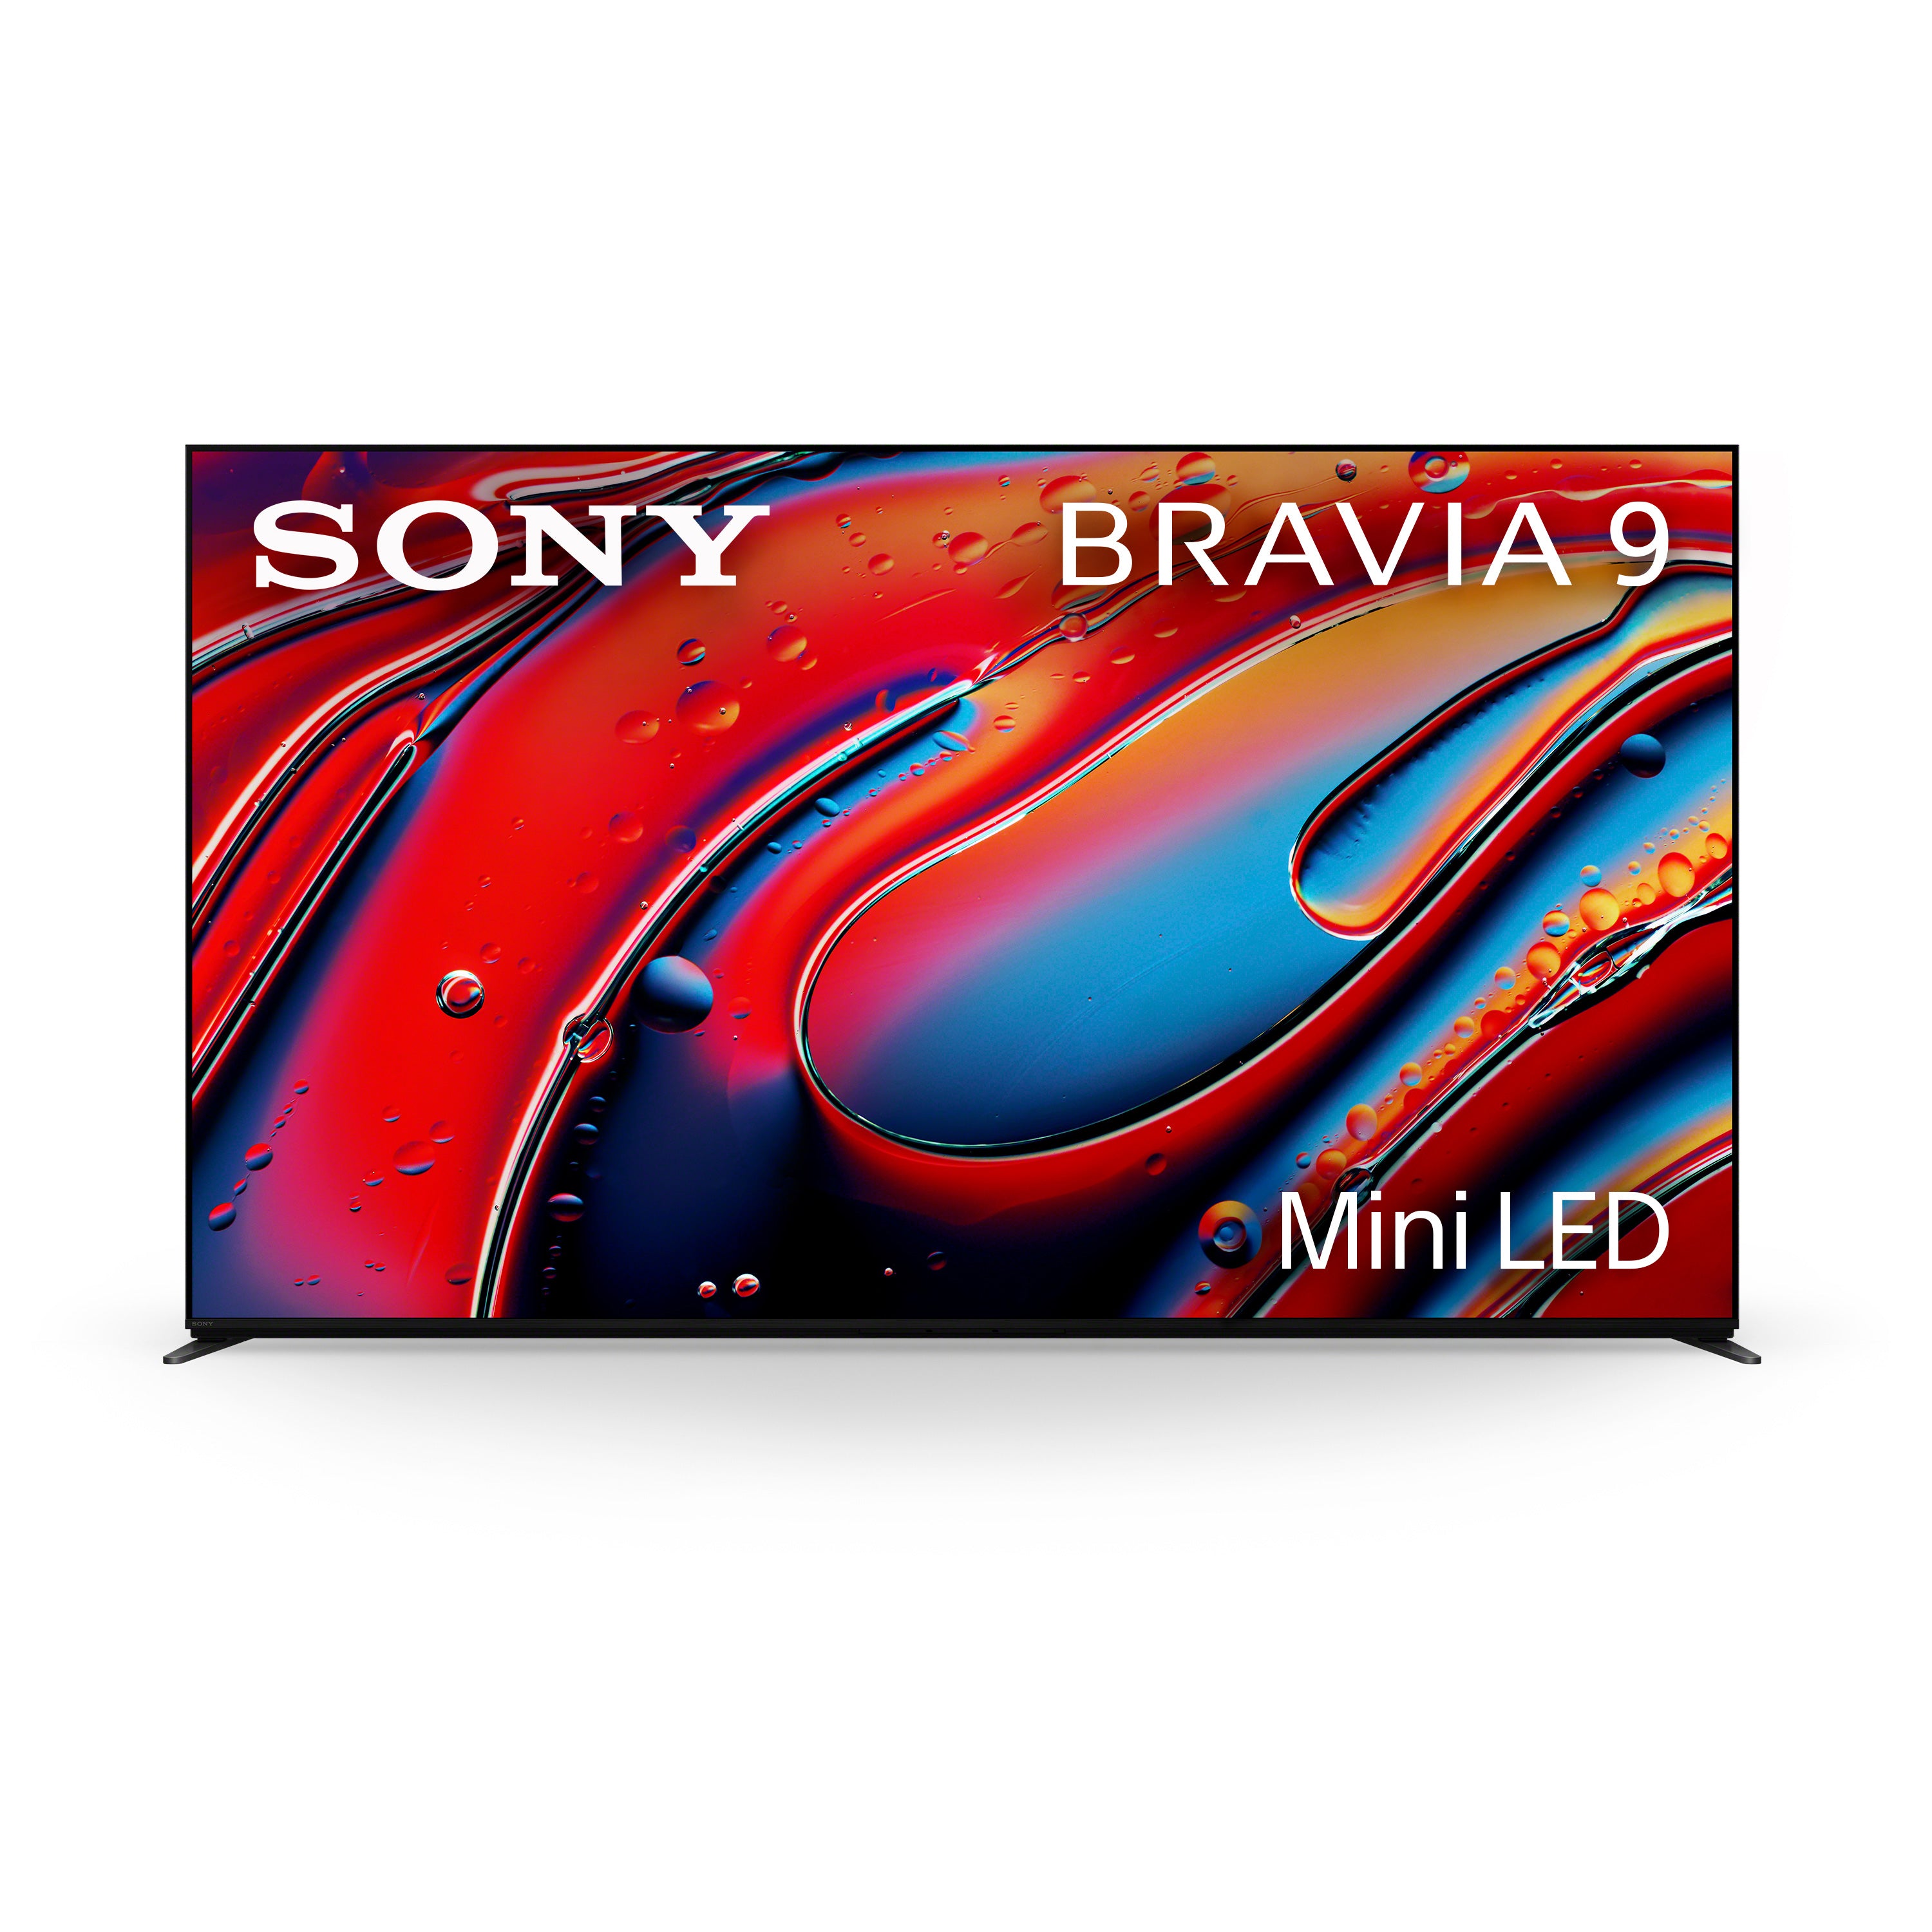 BRAVIA 9 Mini LED QLED 4K HDR Google TV